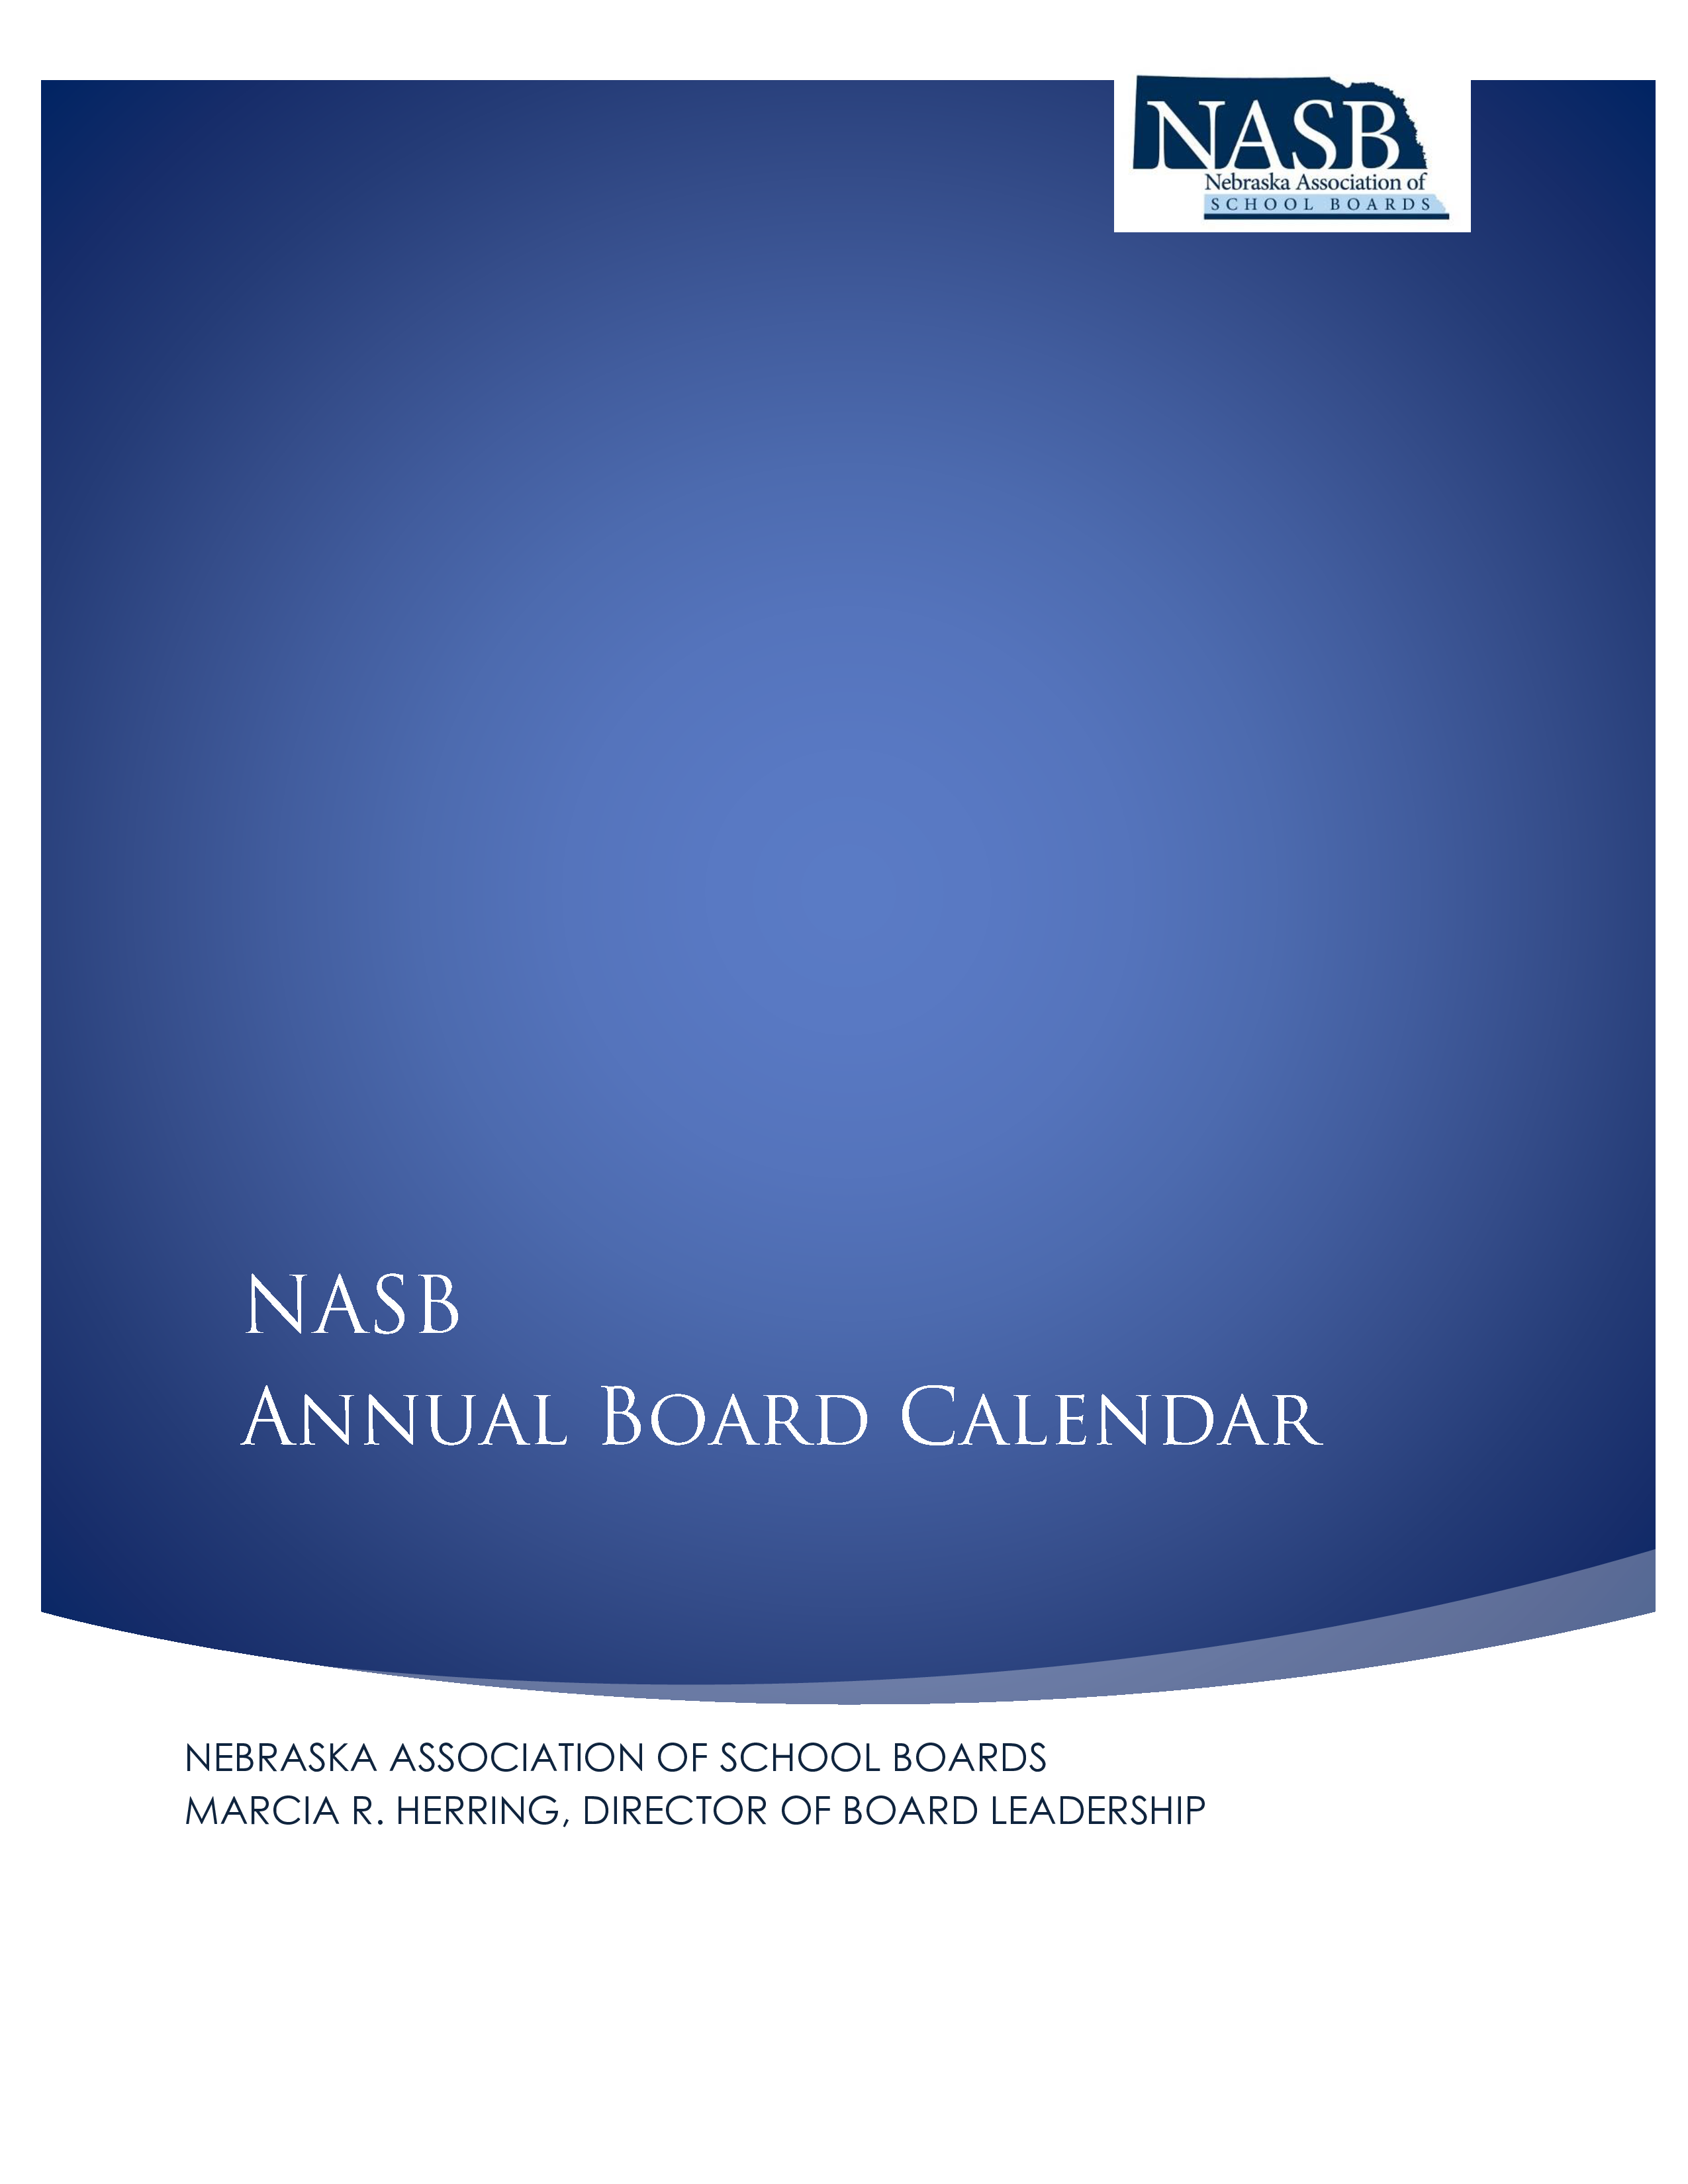 annual board calendar plantilla imagen principal